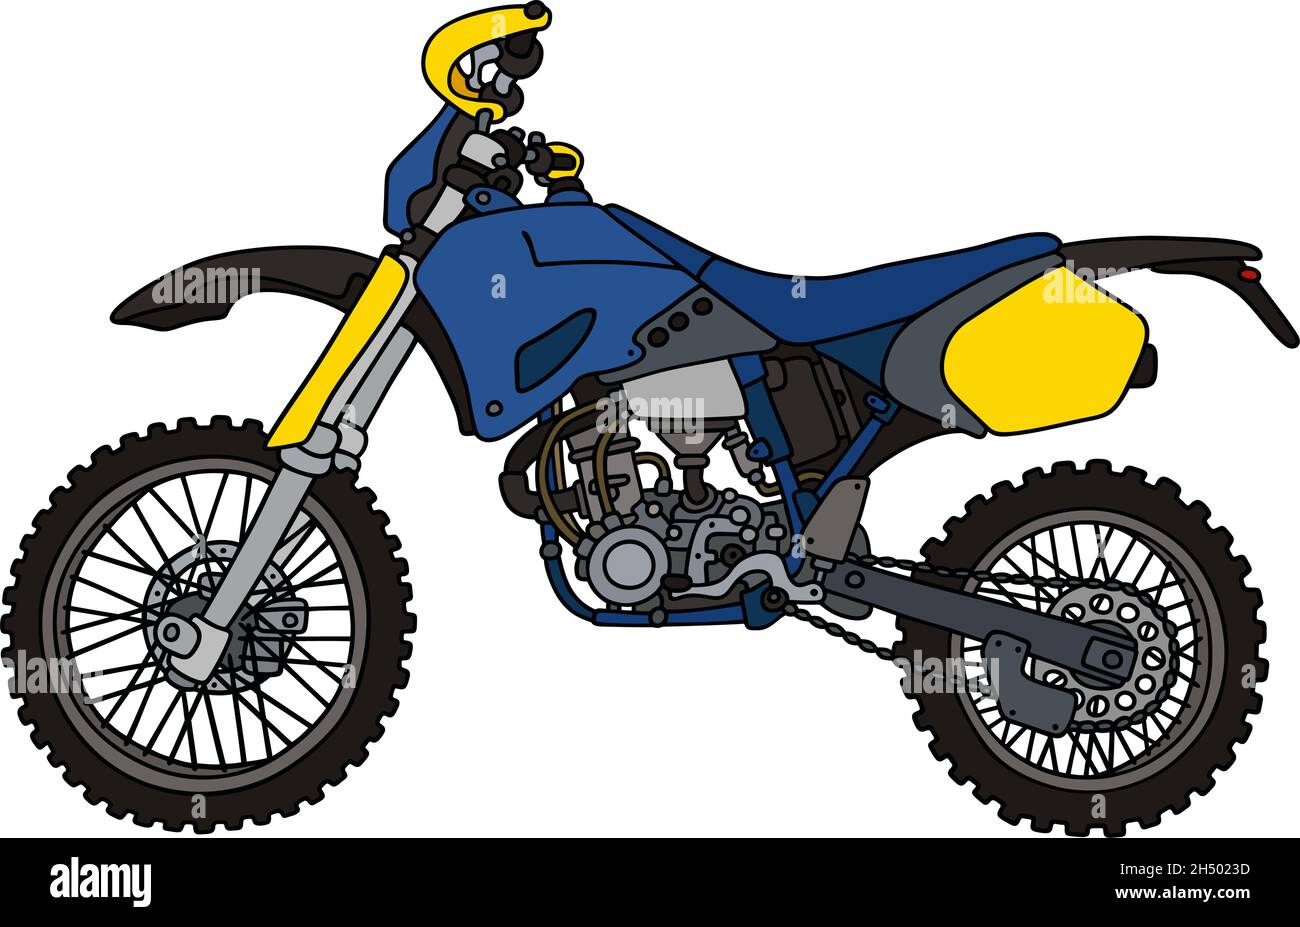 Disegno a mano di una moto da motocross da corsa blu - non un vero tipo  Immagine e Vettoriale - Alamy